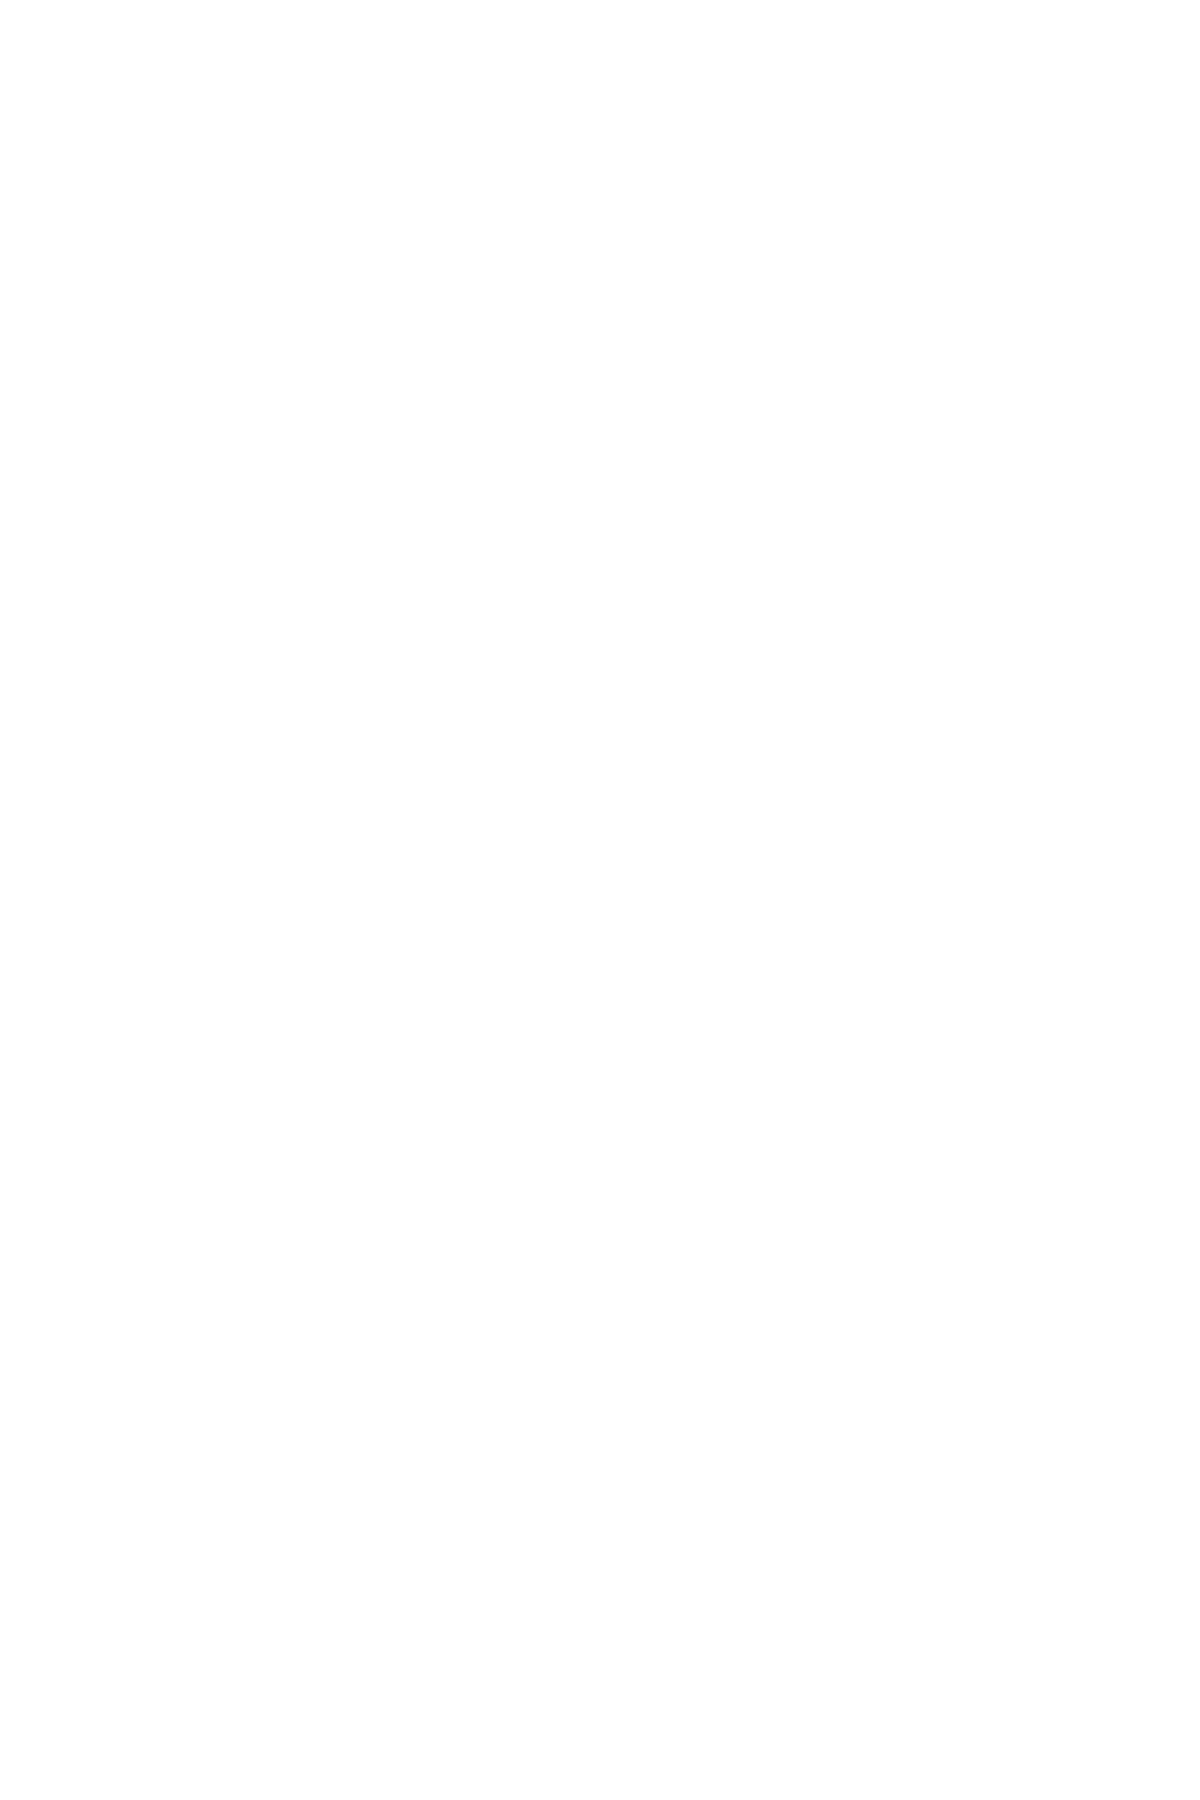 PRIMART Gallery